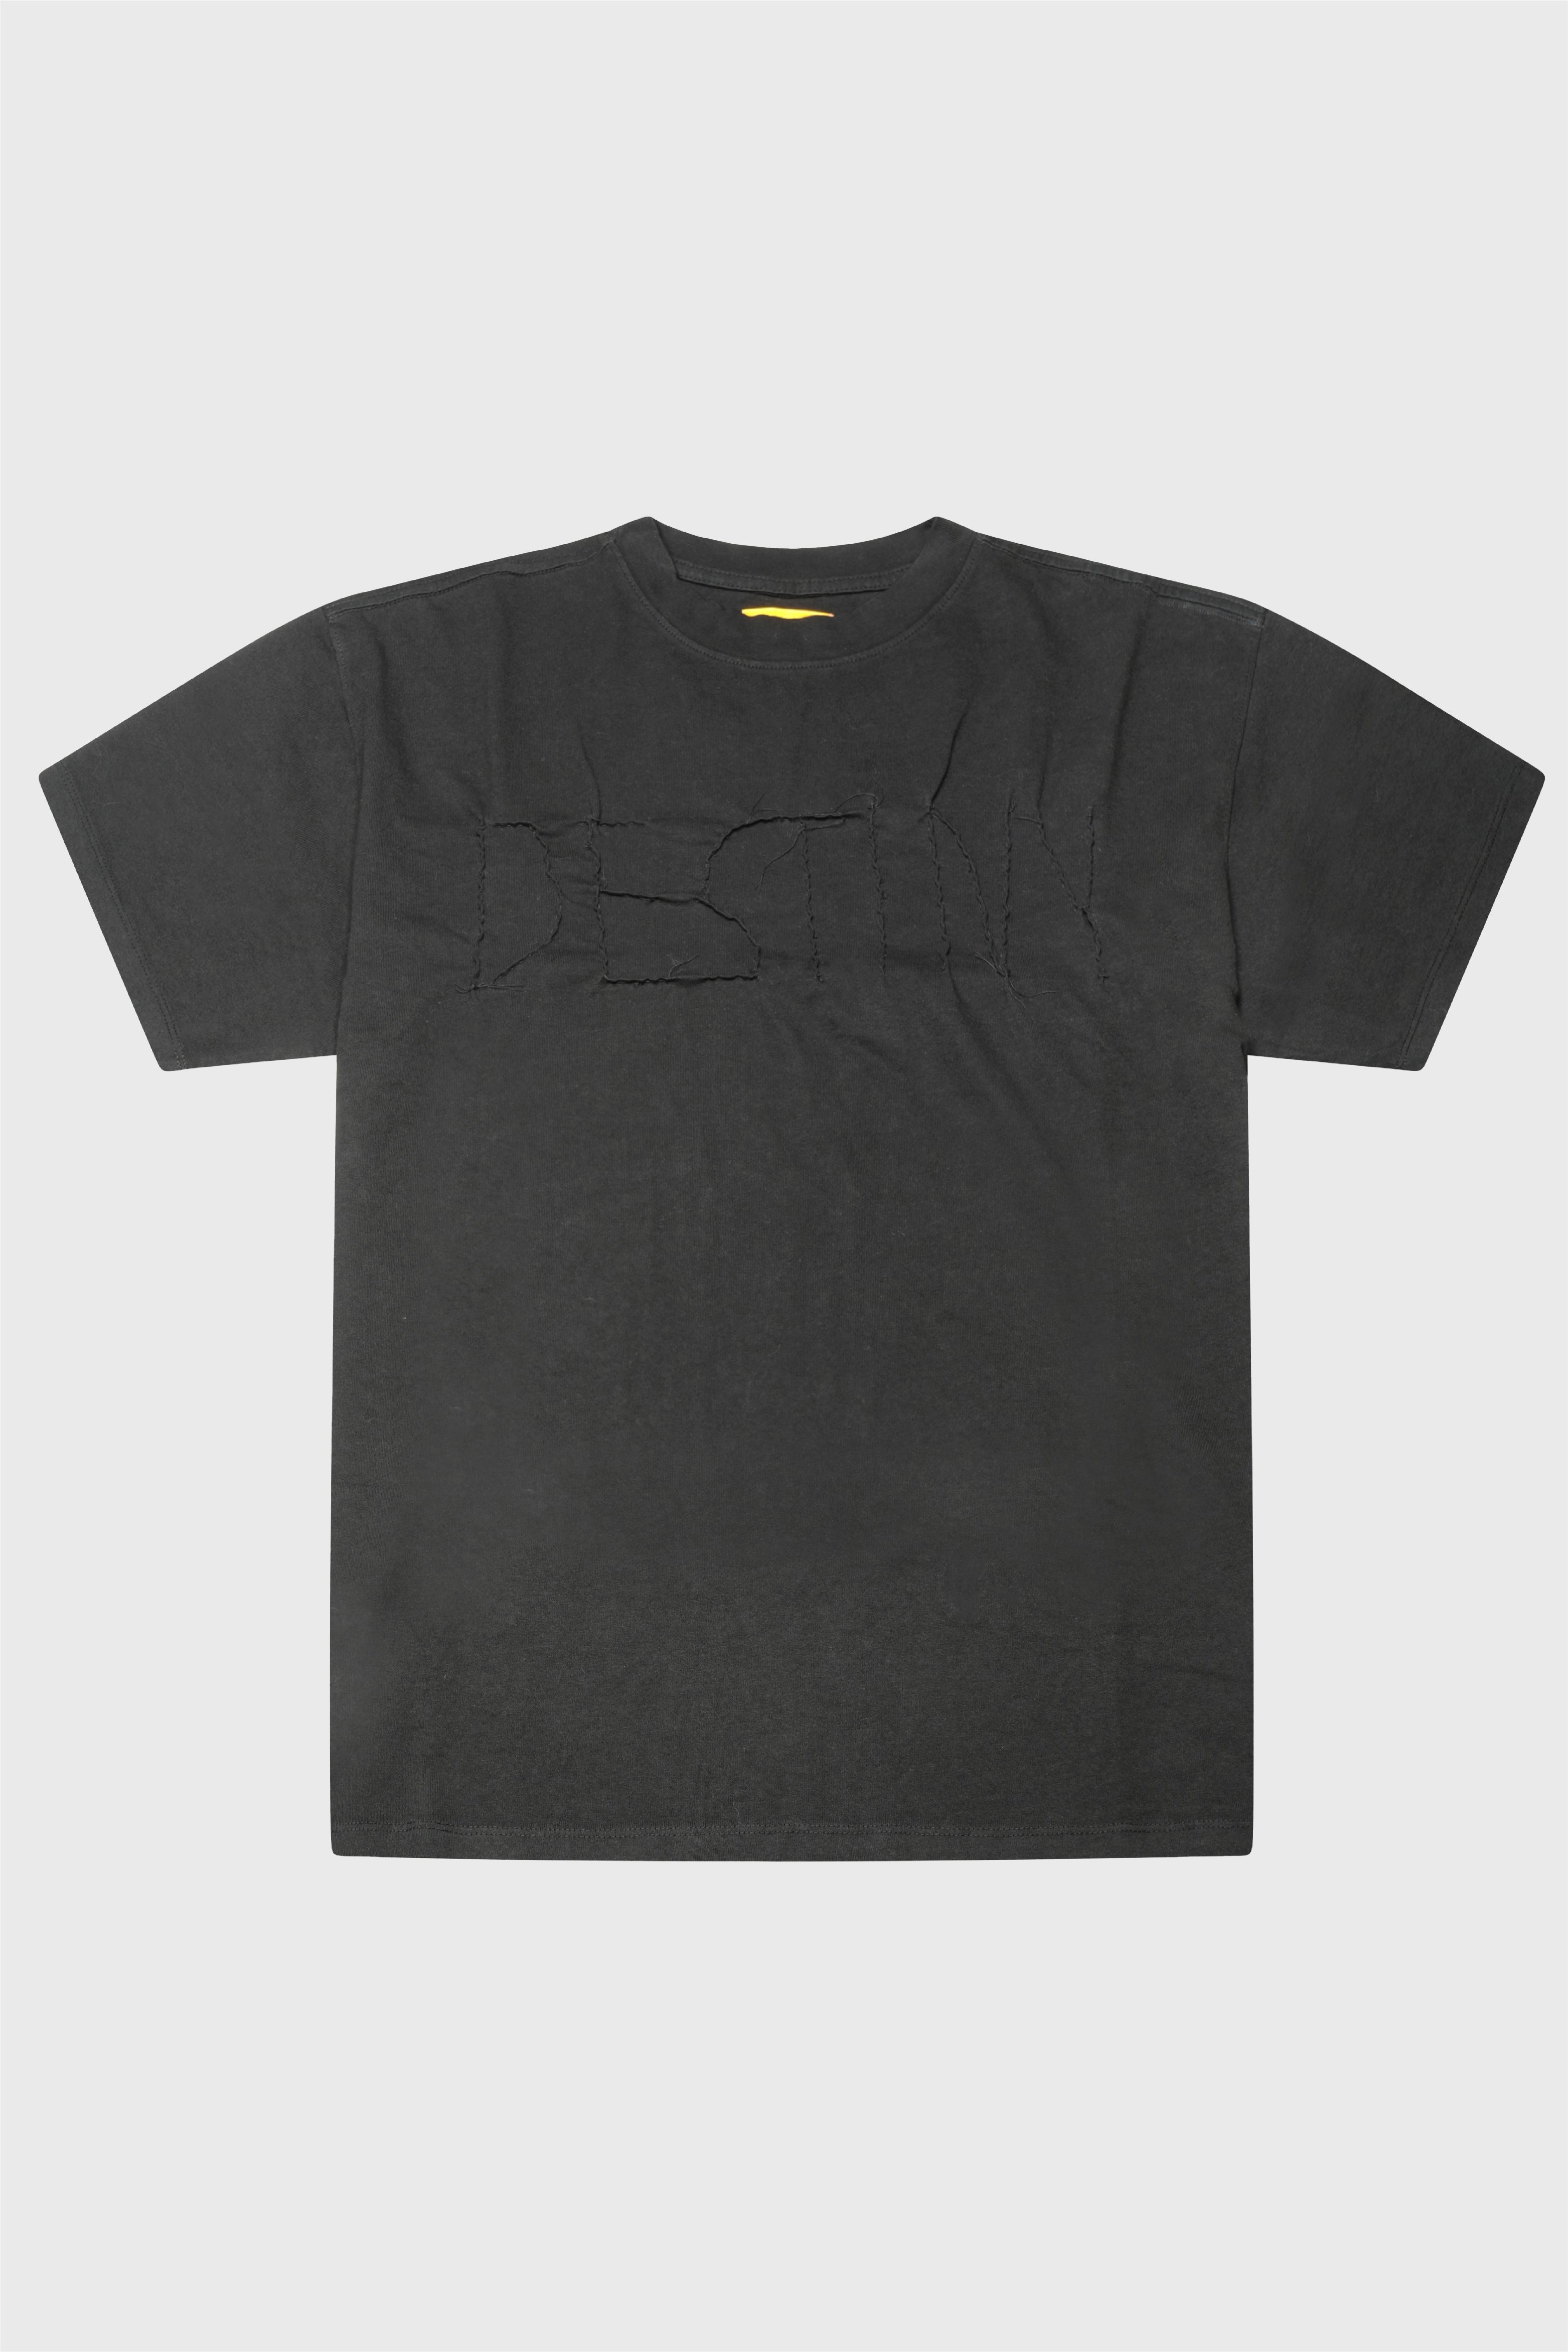 Selectshop FRAME - AIREI Destiny Ghost Tee T-Shirts Concept Store Dubai